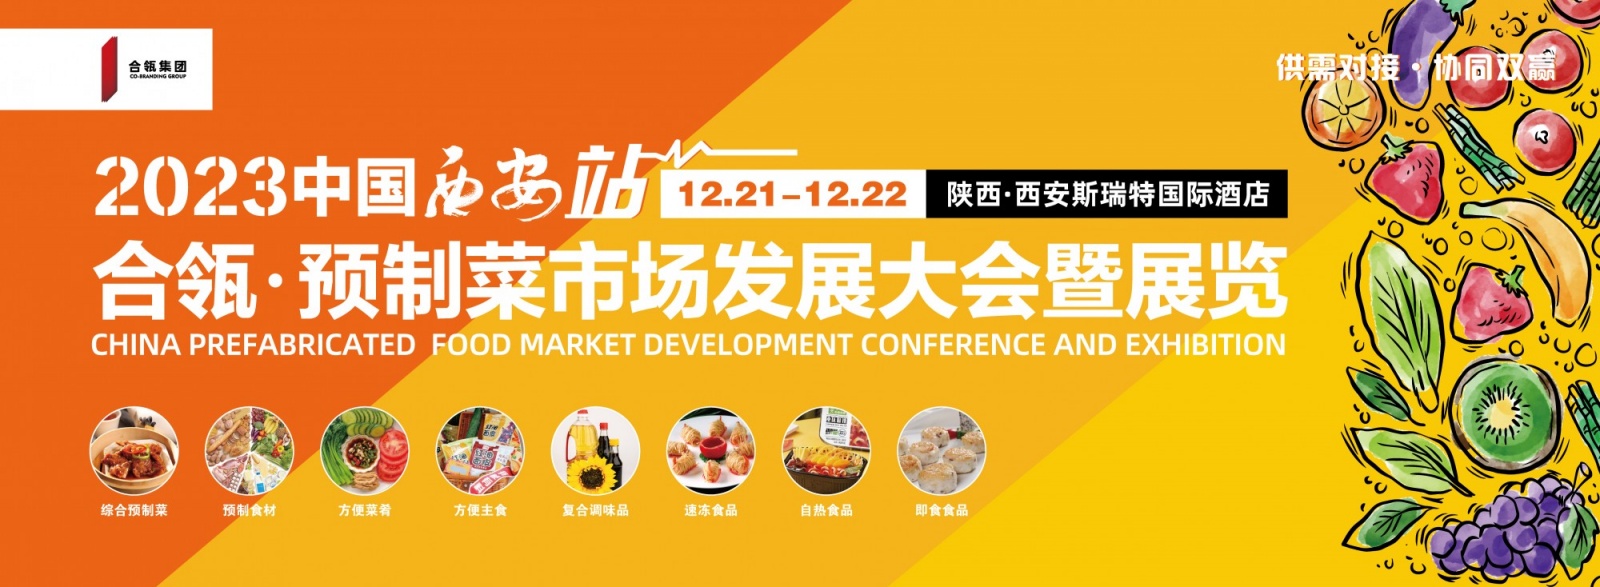 2023合瓴·预制菜市场发展大会暨展览会